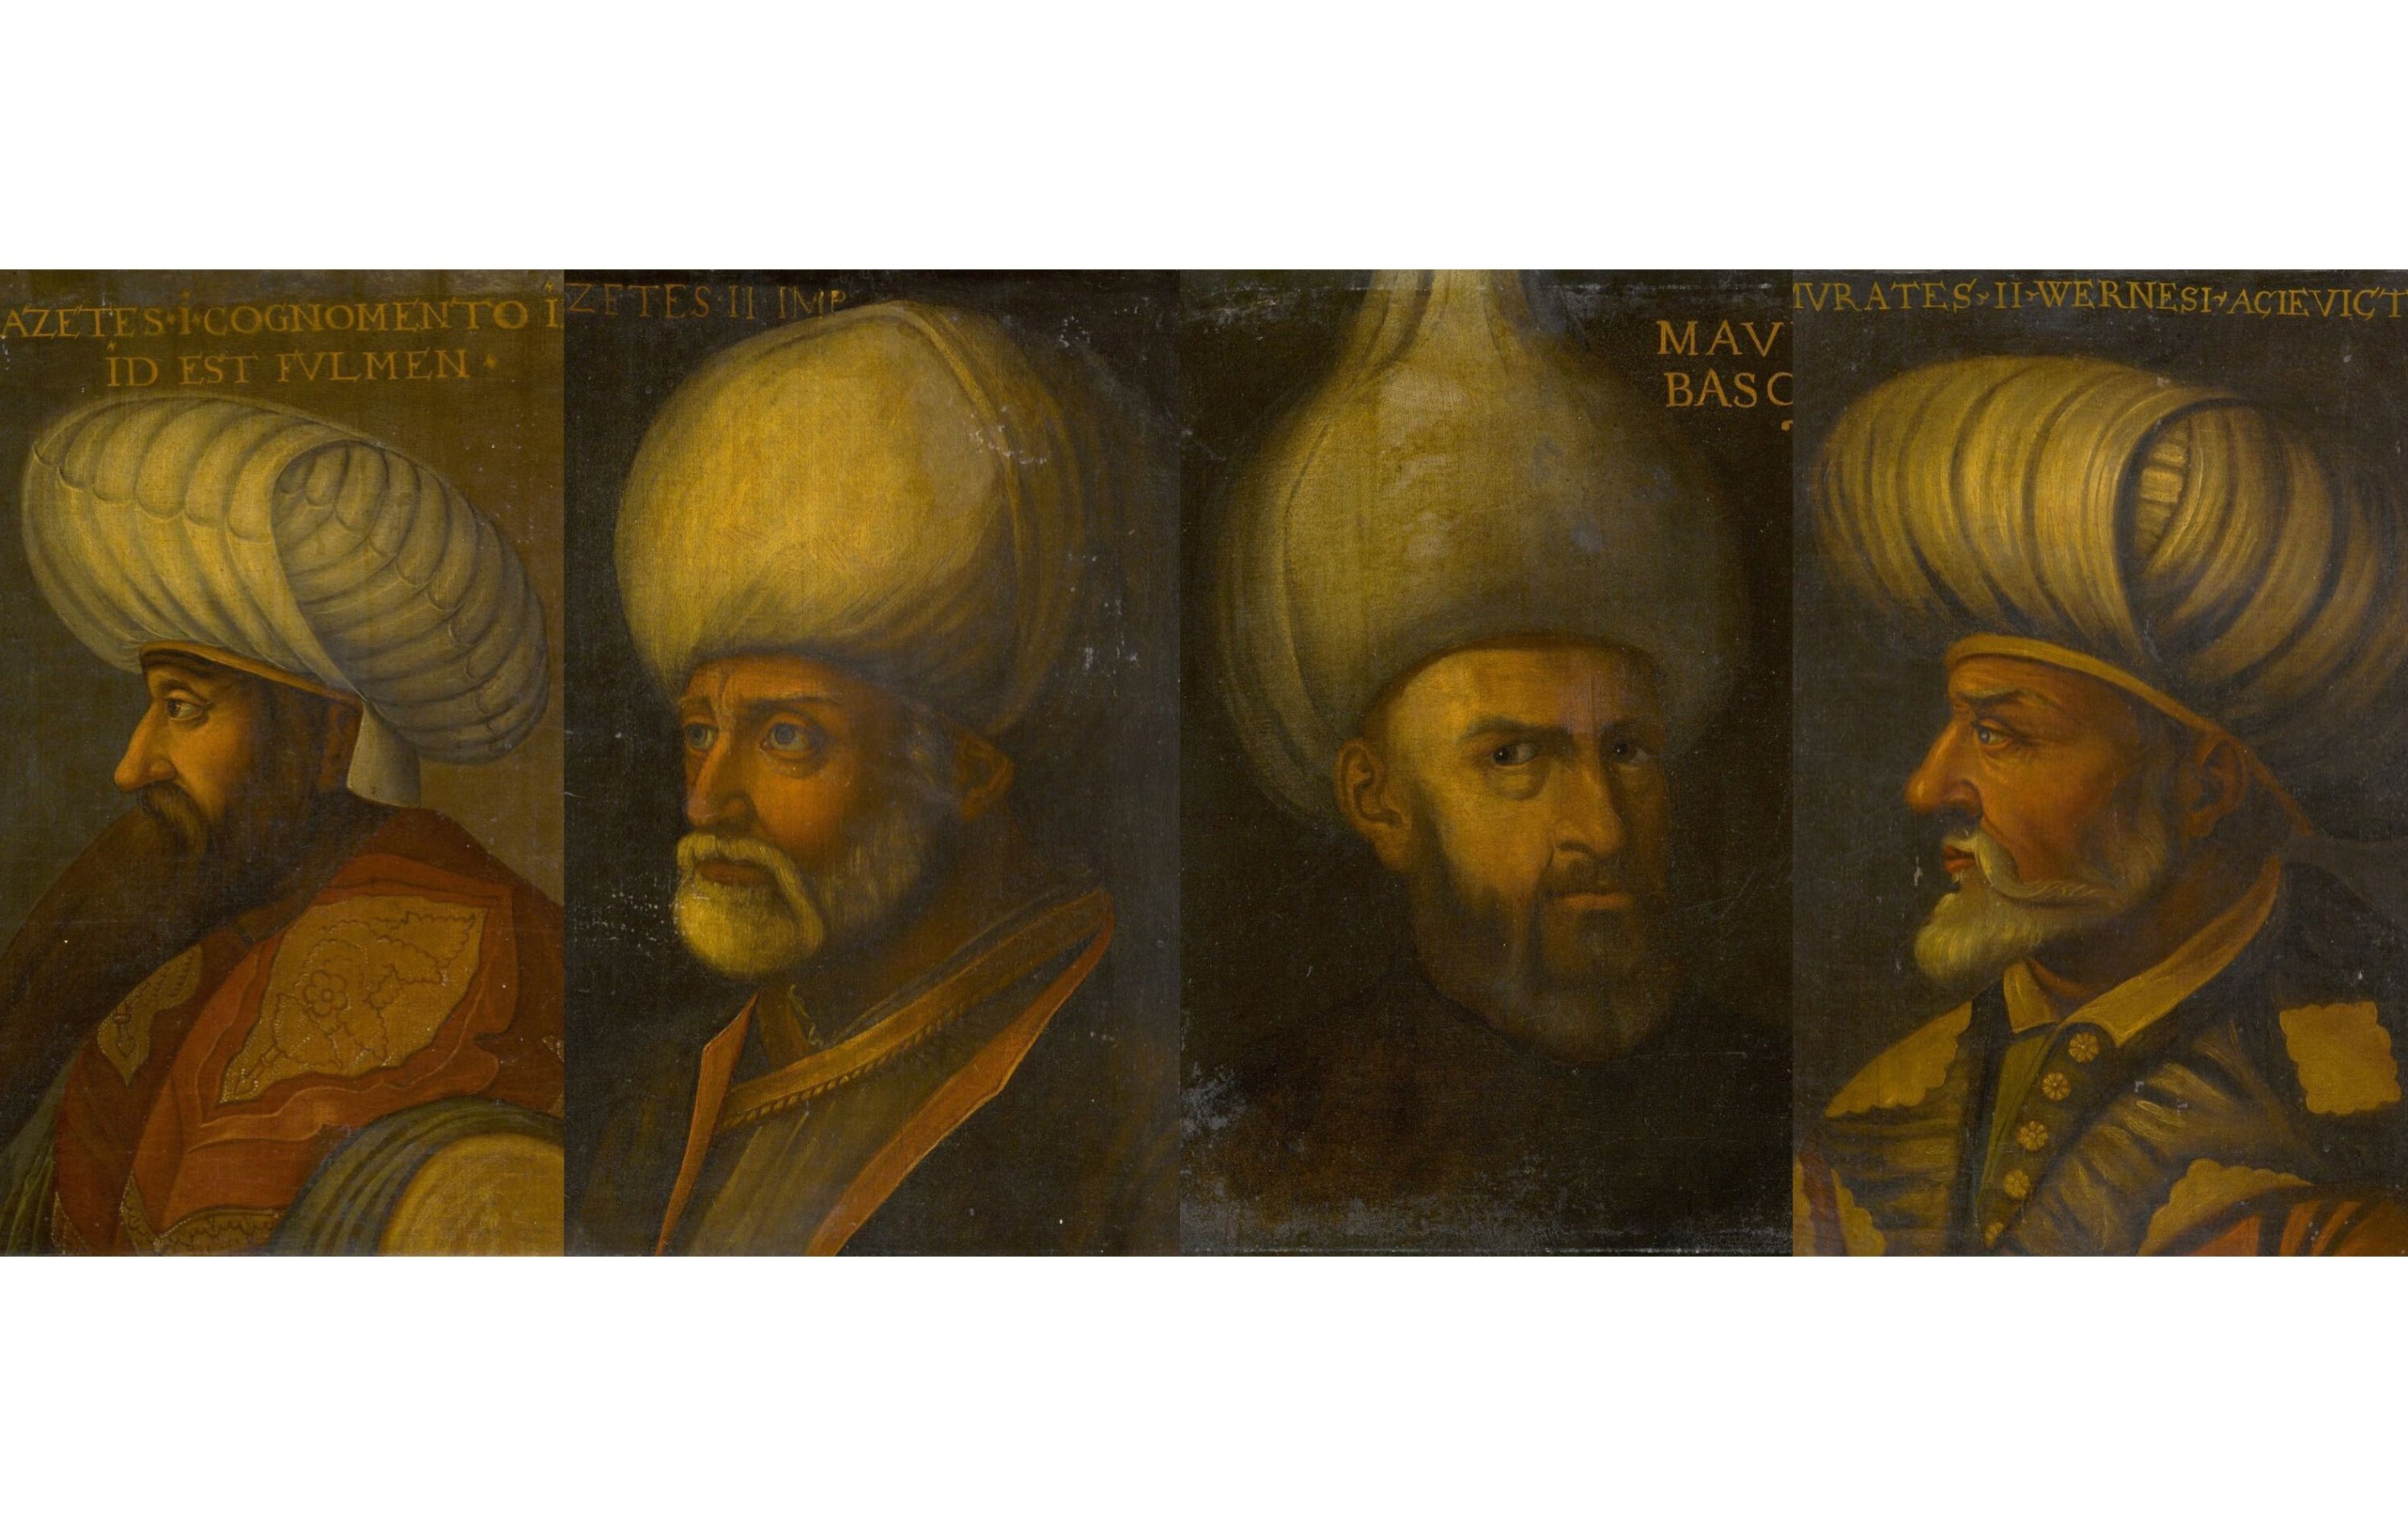 Sotheby's tarafından müzayedede satılan Osmanlı padişahlarının portreleri, soldan sağa, I. Bayezid, II. Bayezid, I. Mehmed ve II. Murad.  (DHA)